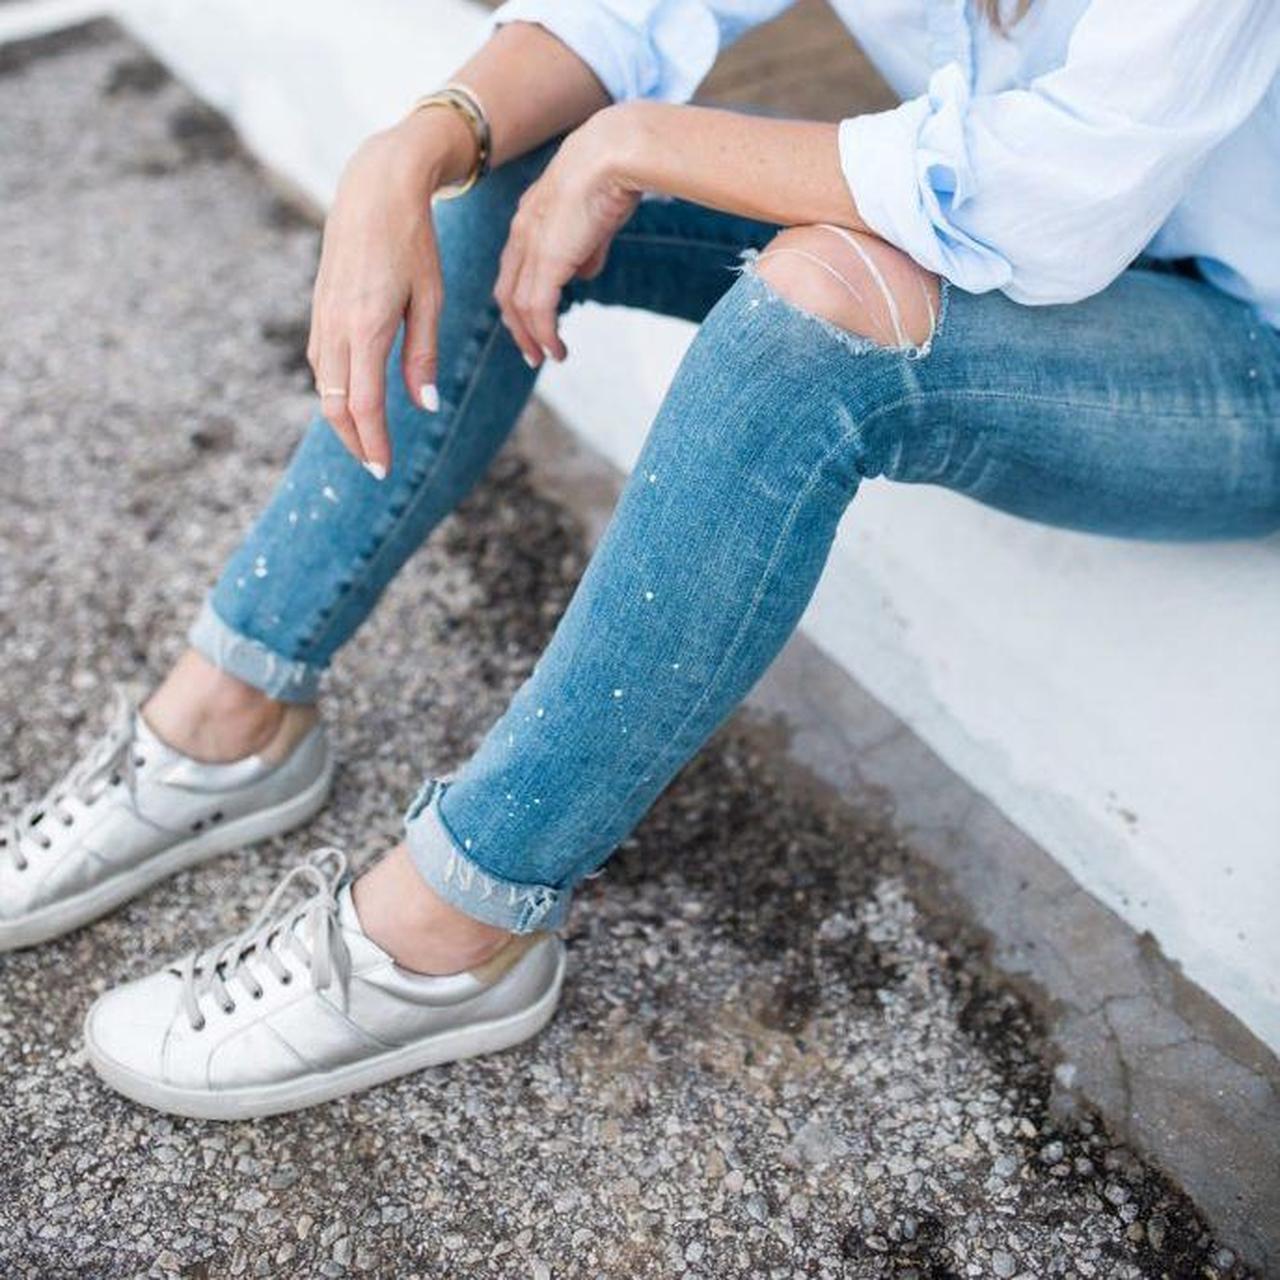 Joie Women's Dakota Sneaker in Silver Metallic Size - Depop